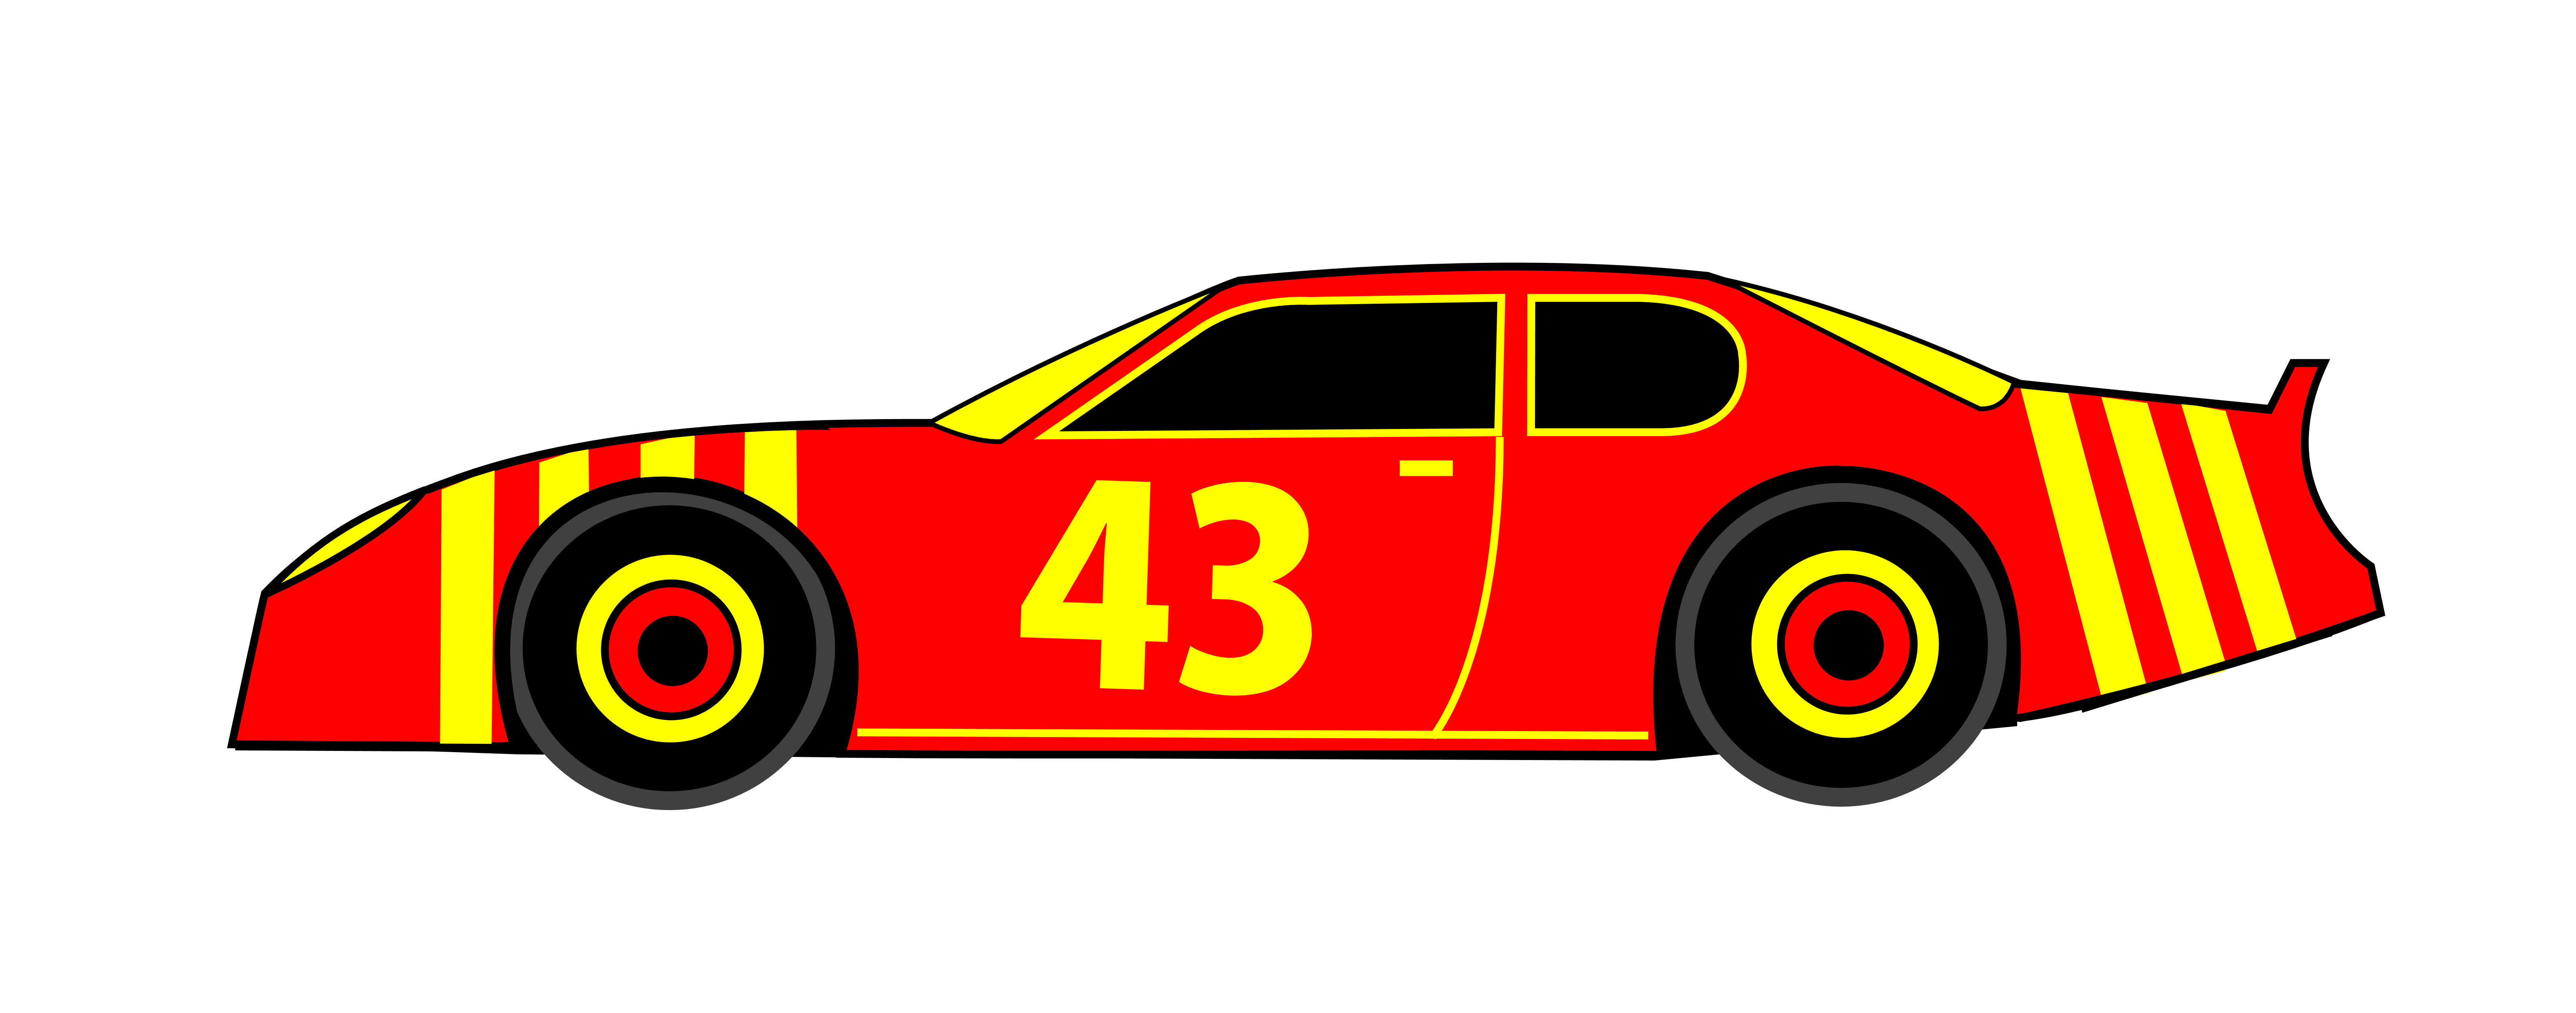 Clipart Race Car Clip Art Library